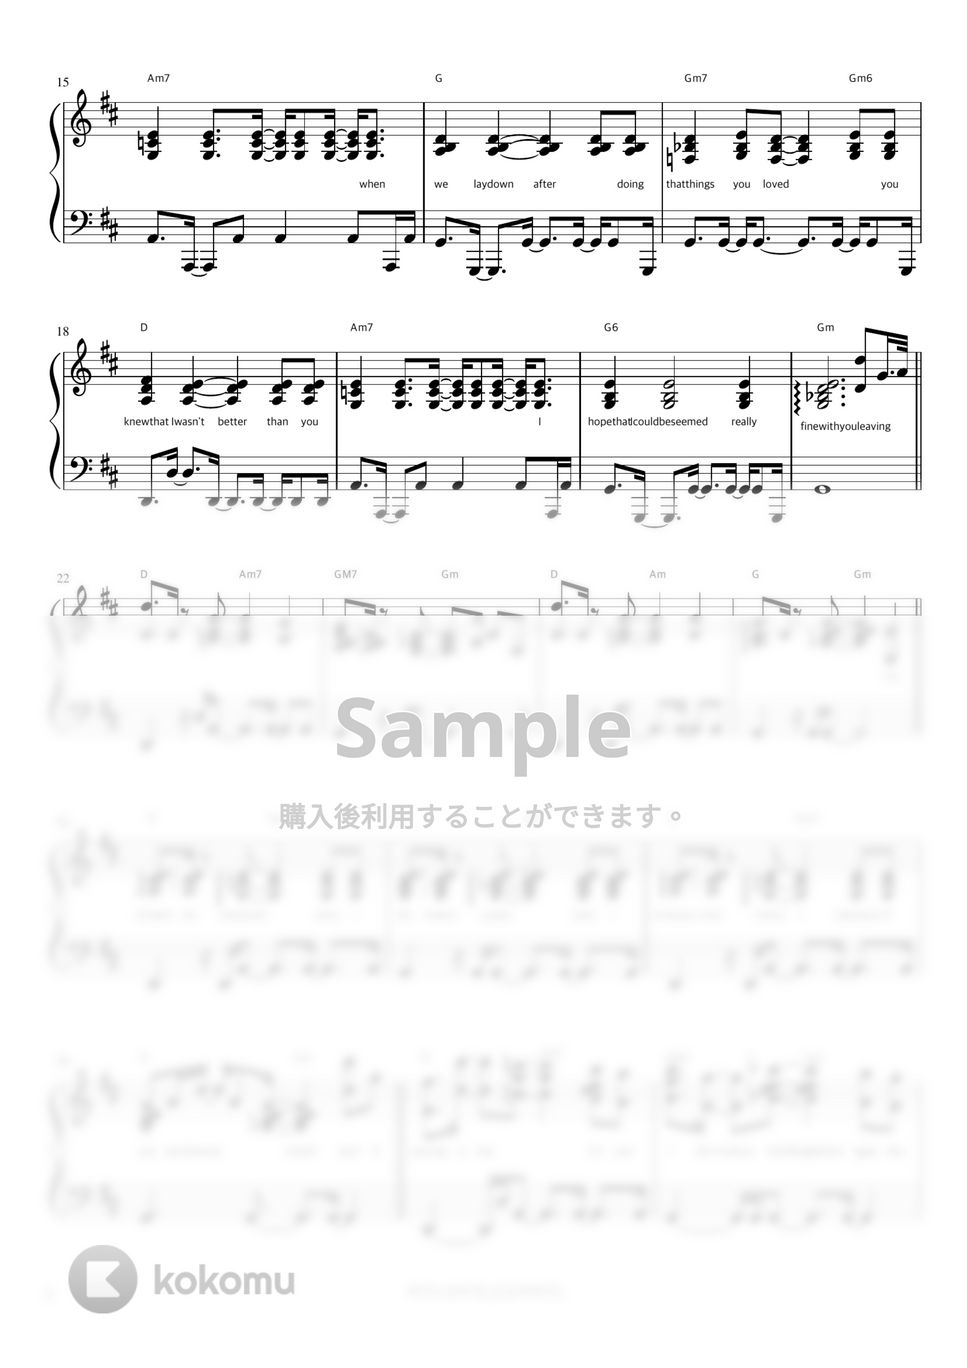 ペク・イェリン - 0310 (伴奏楽譜) by 피아노정류장